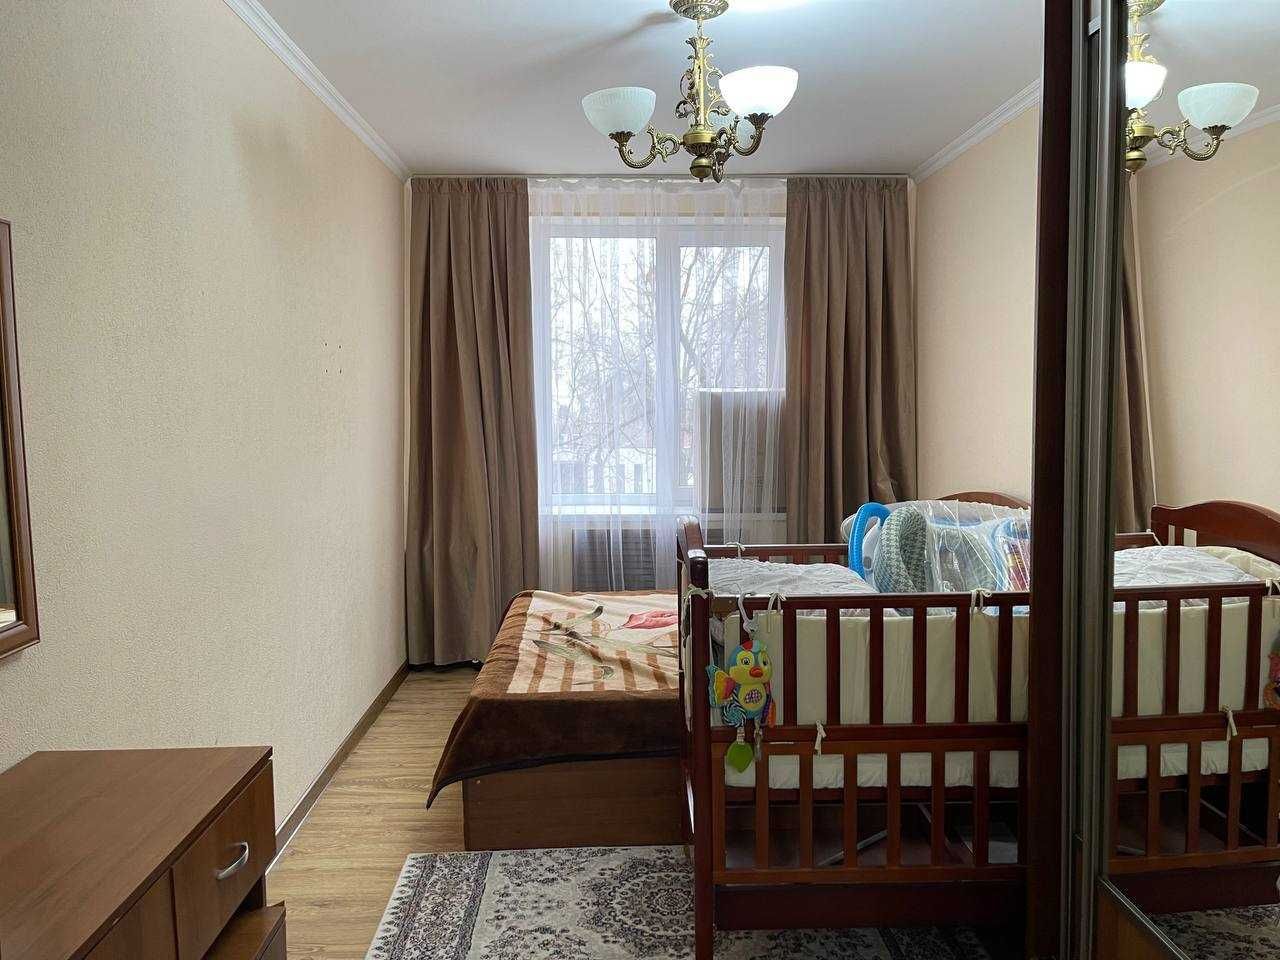 Продается квартира на Новомосковской с хорошим ремонтом без мебели!